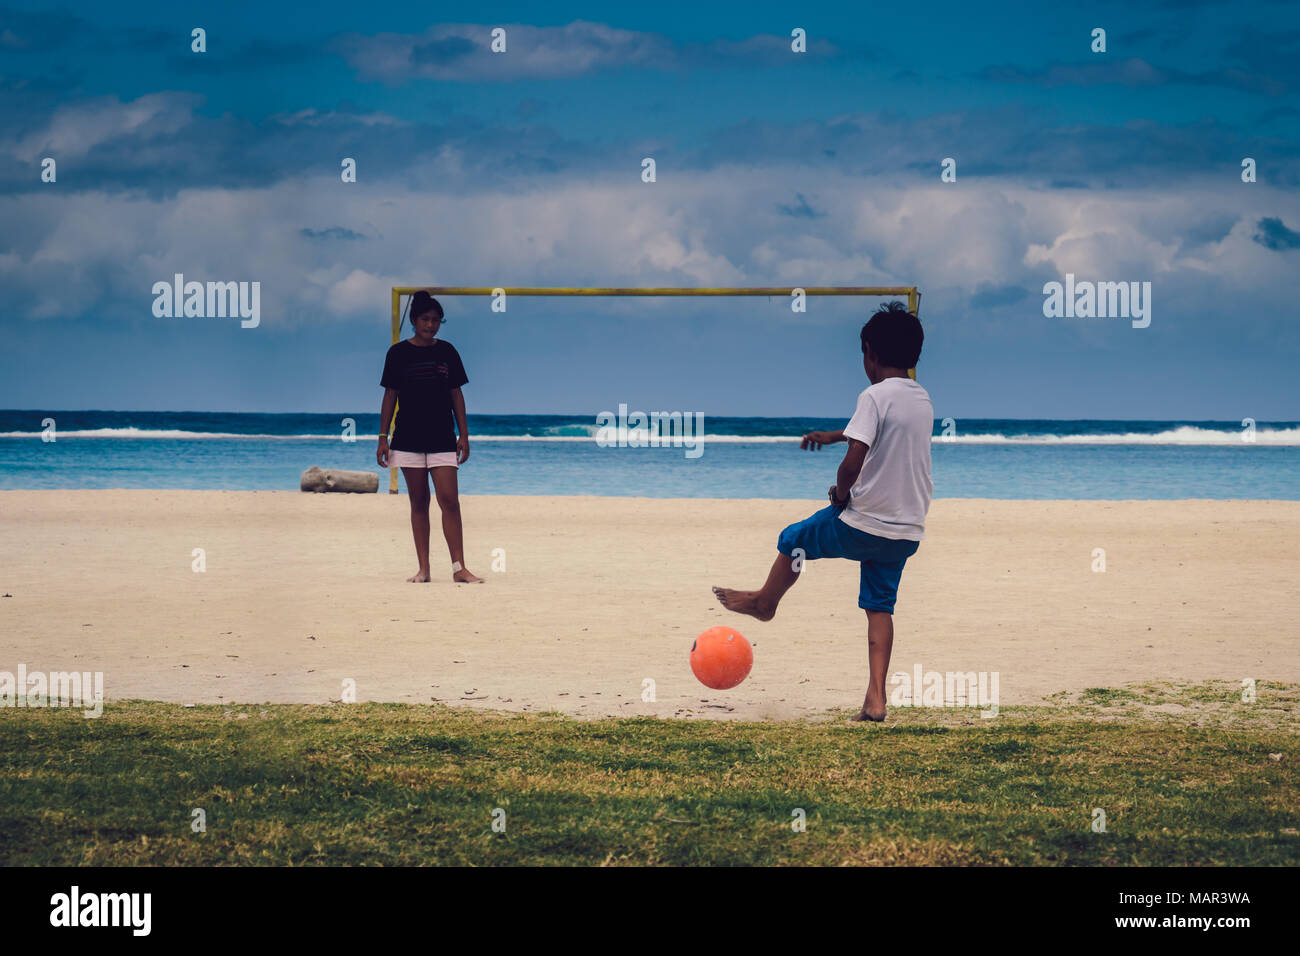 Bora Bora (French Polynesia) - Teenagers playing fottball on the beach Stock Photo